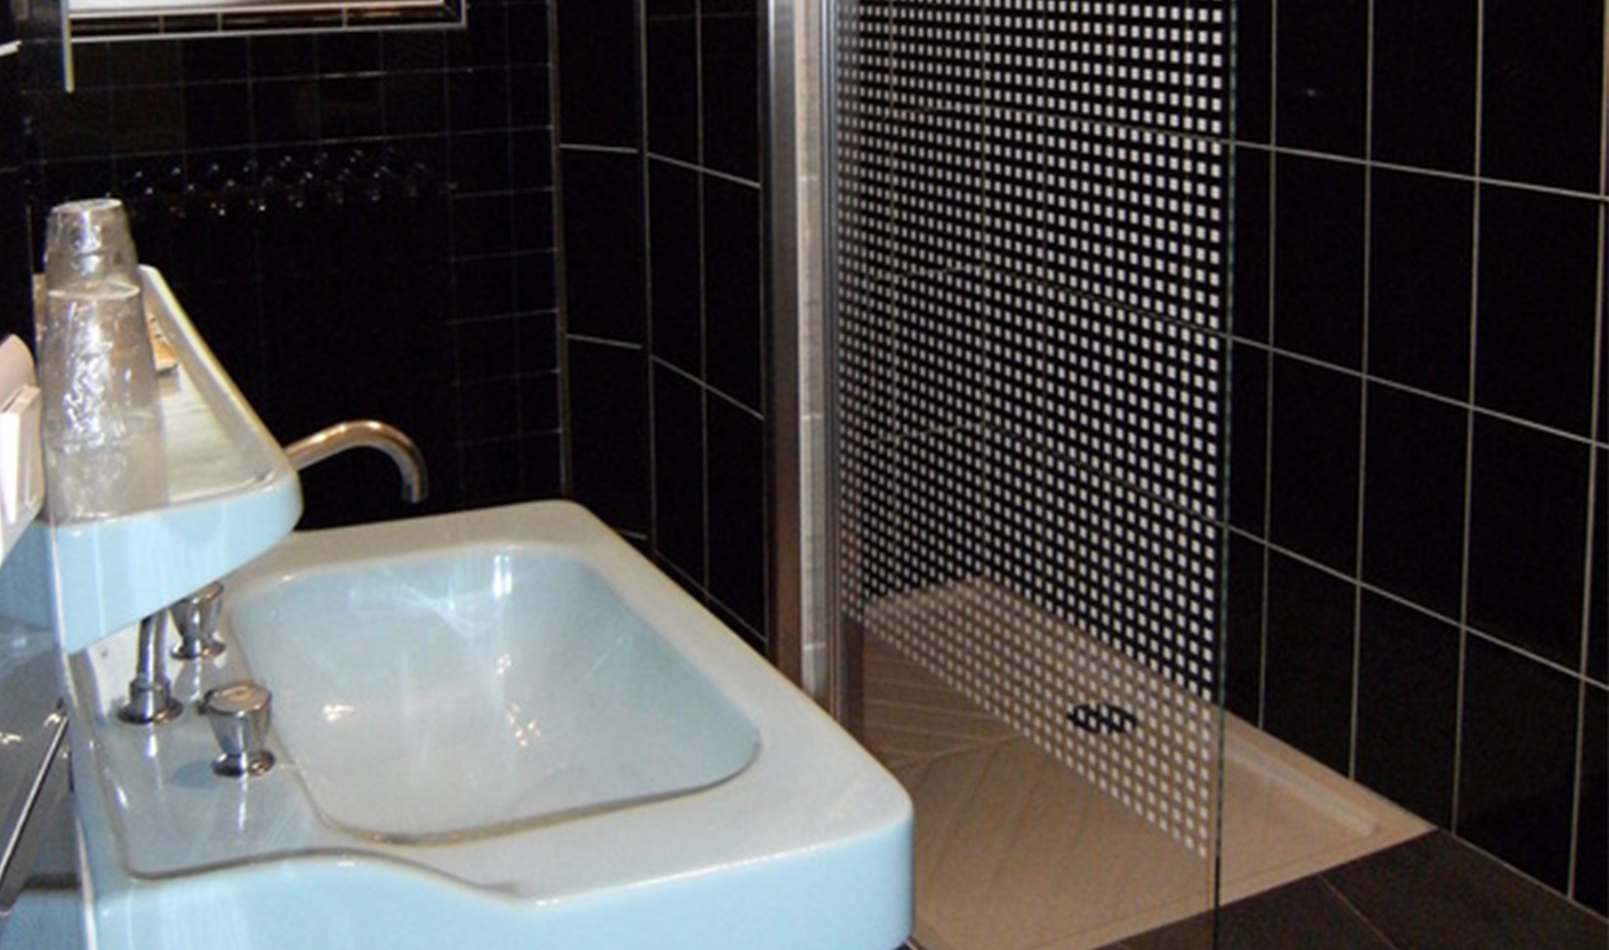 05_Chambres hôtes Despouey salle de bain Larrau Soule Pays Basque 